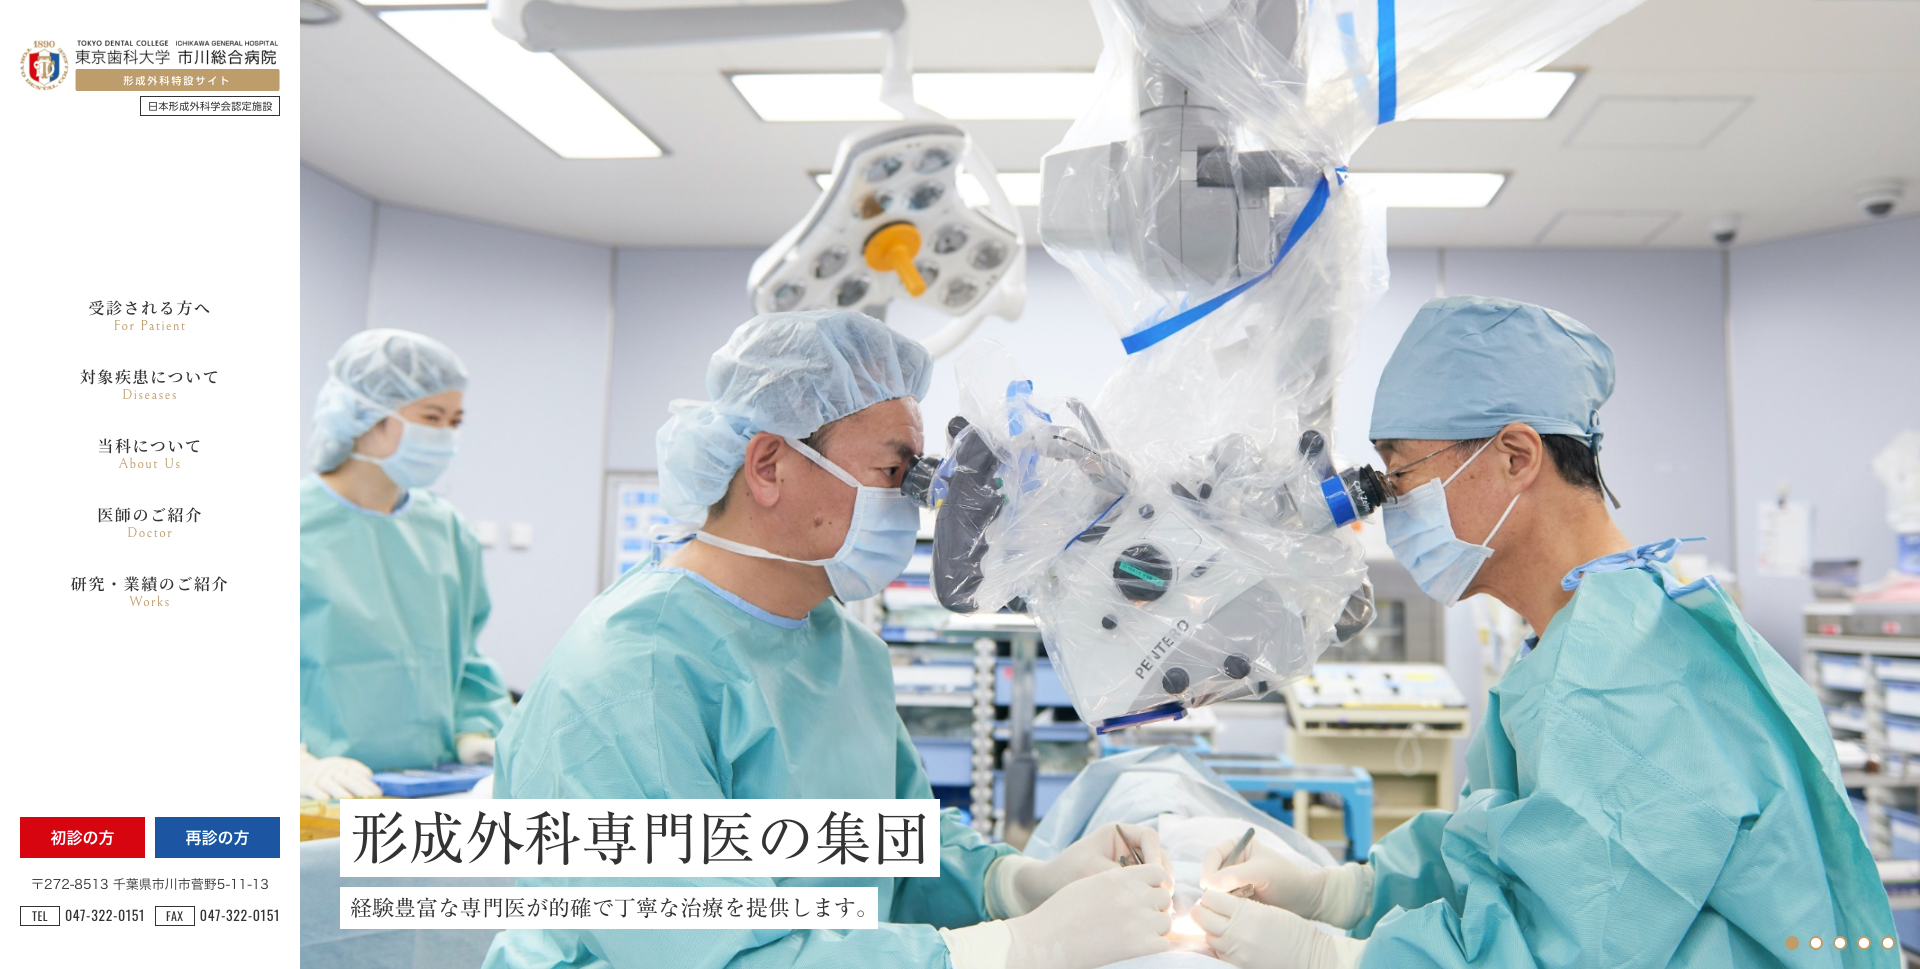 東京歯科大学 市川総合病院 形成外科ホームページ